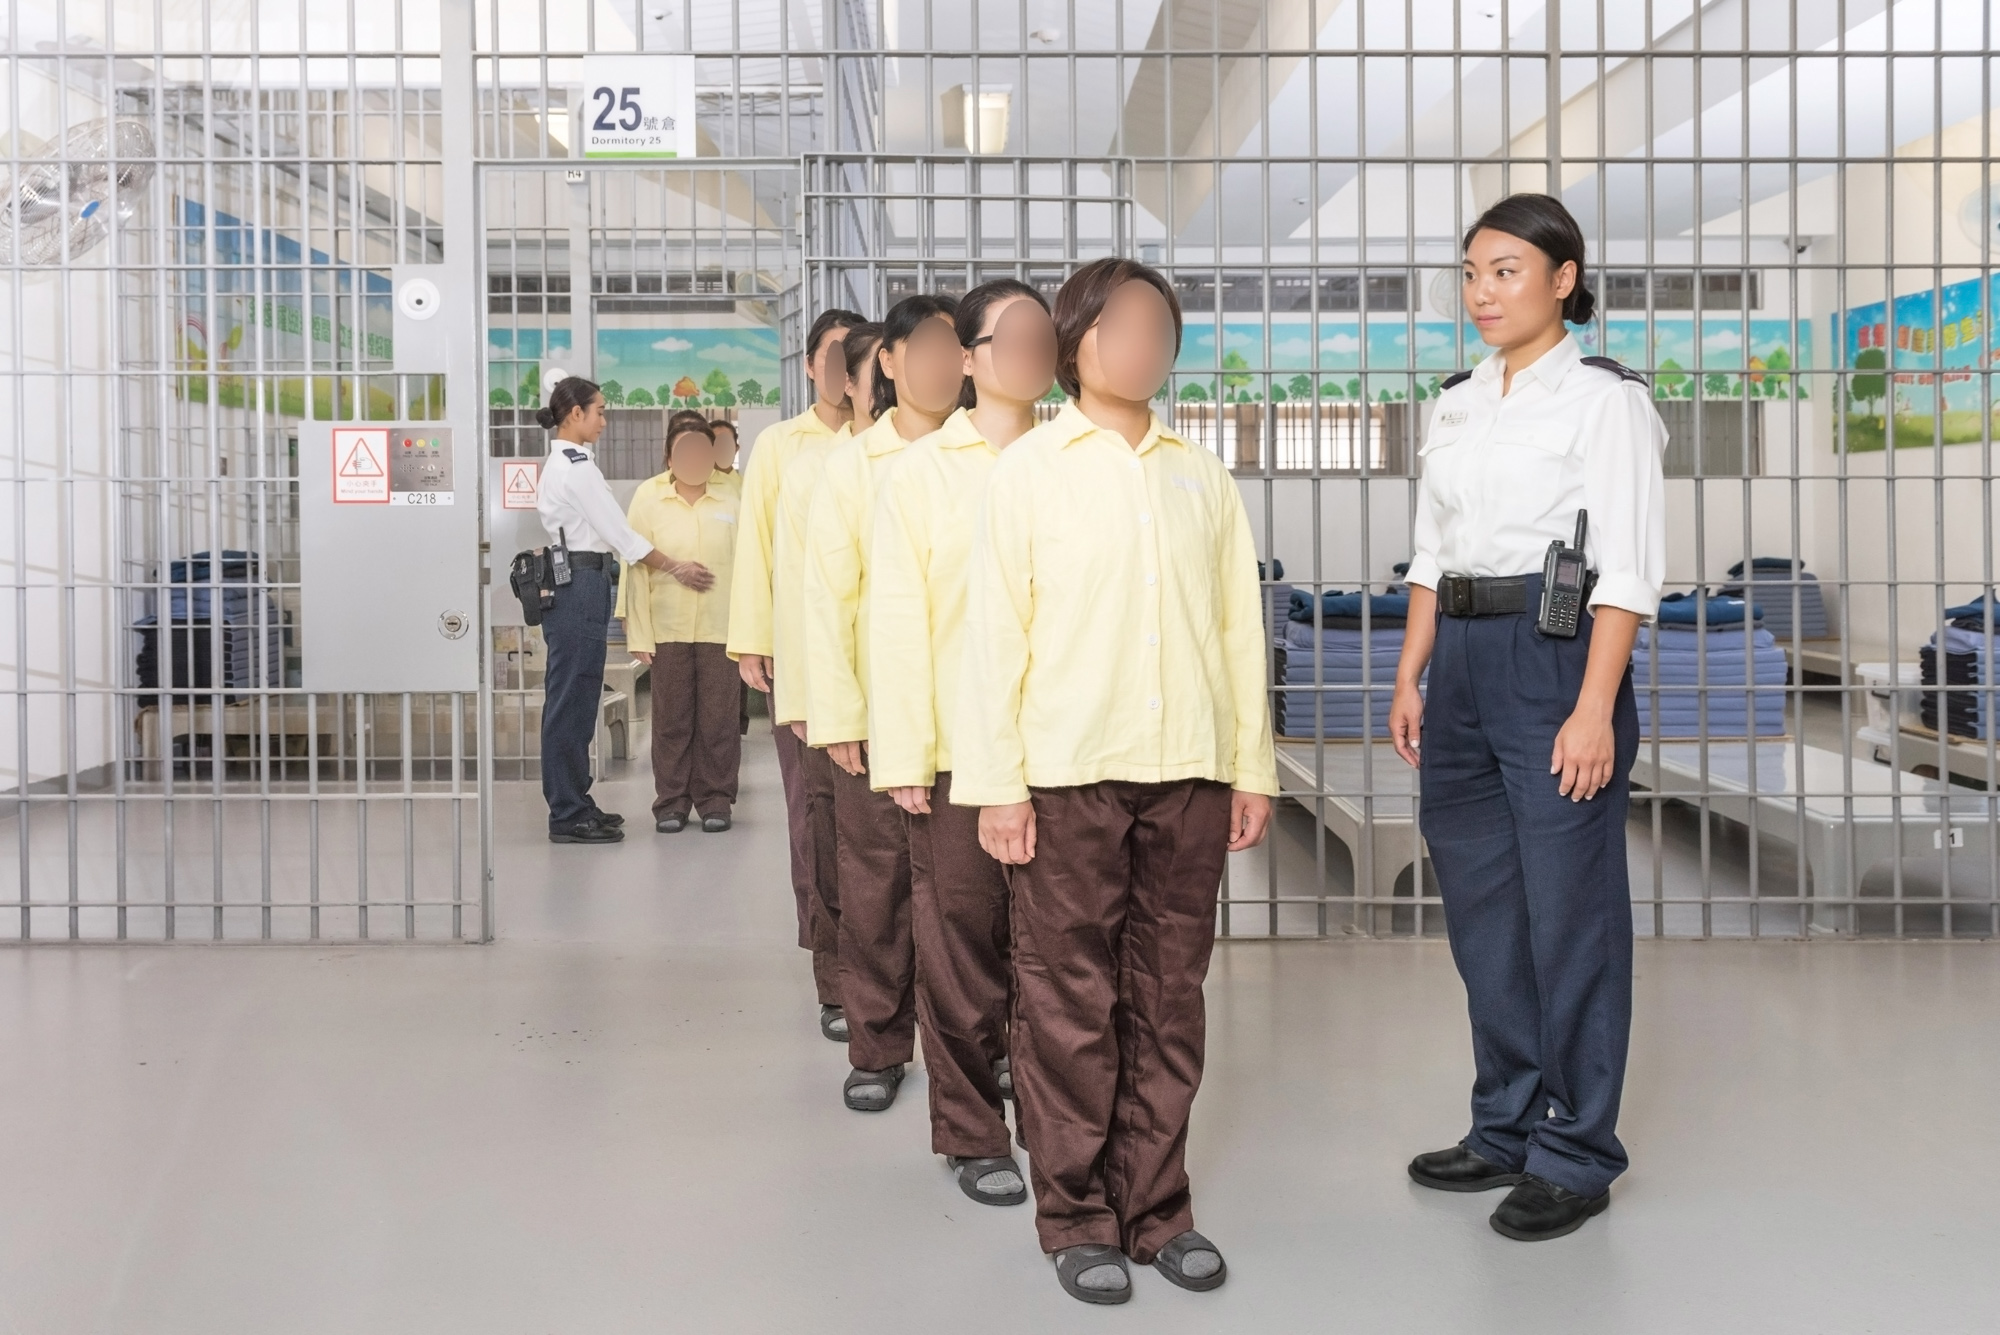 惩教人员监管在囚人士，以维持院所秩序。